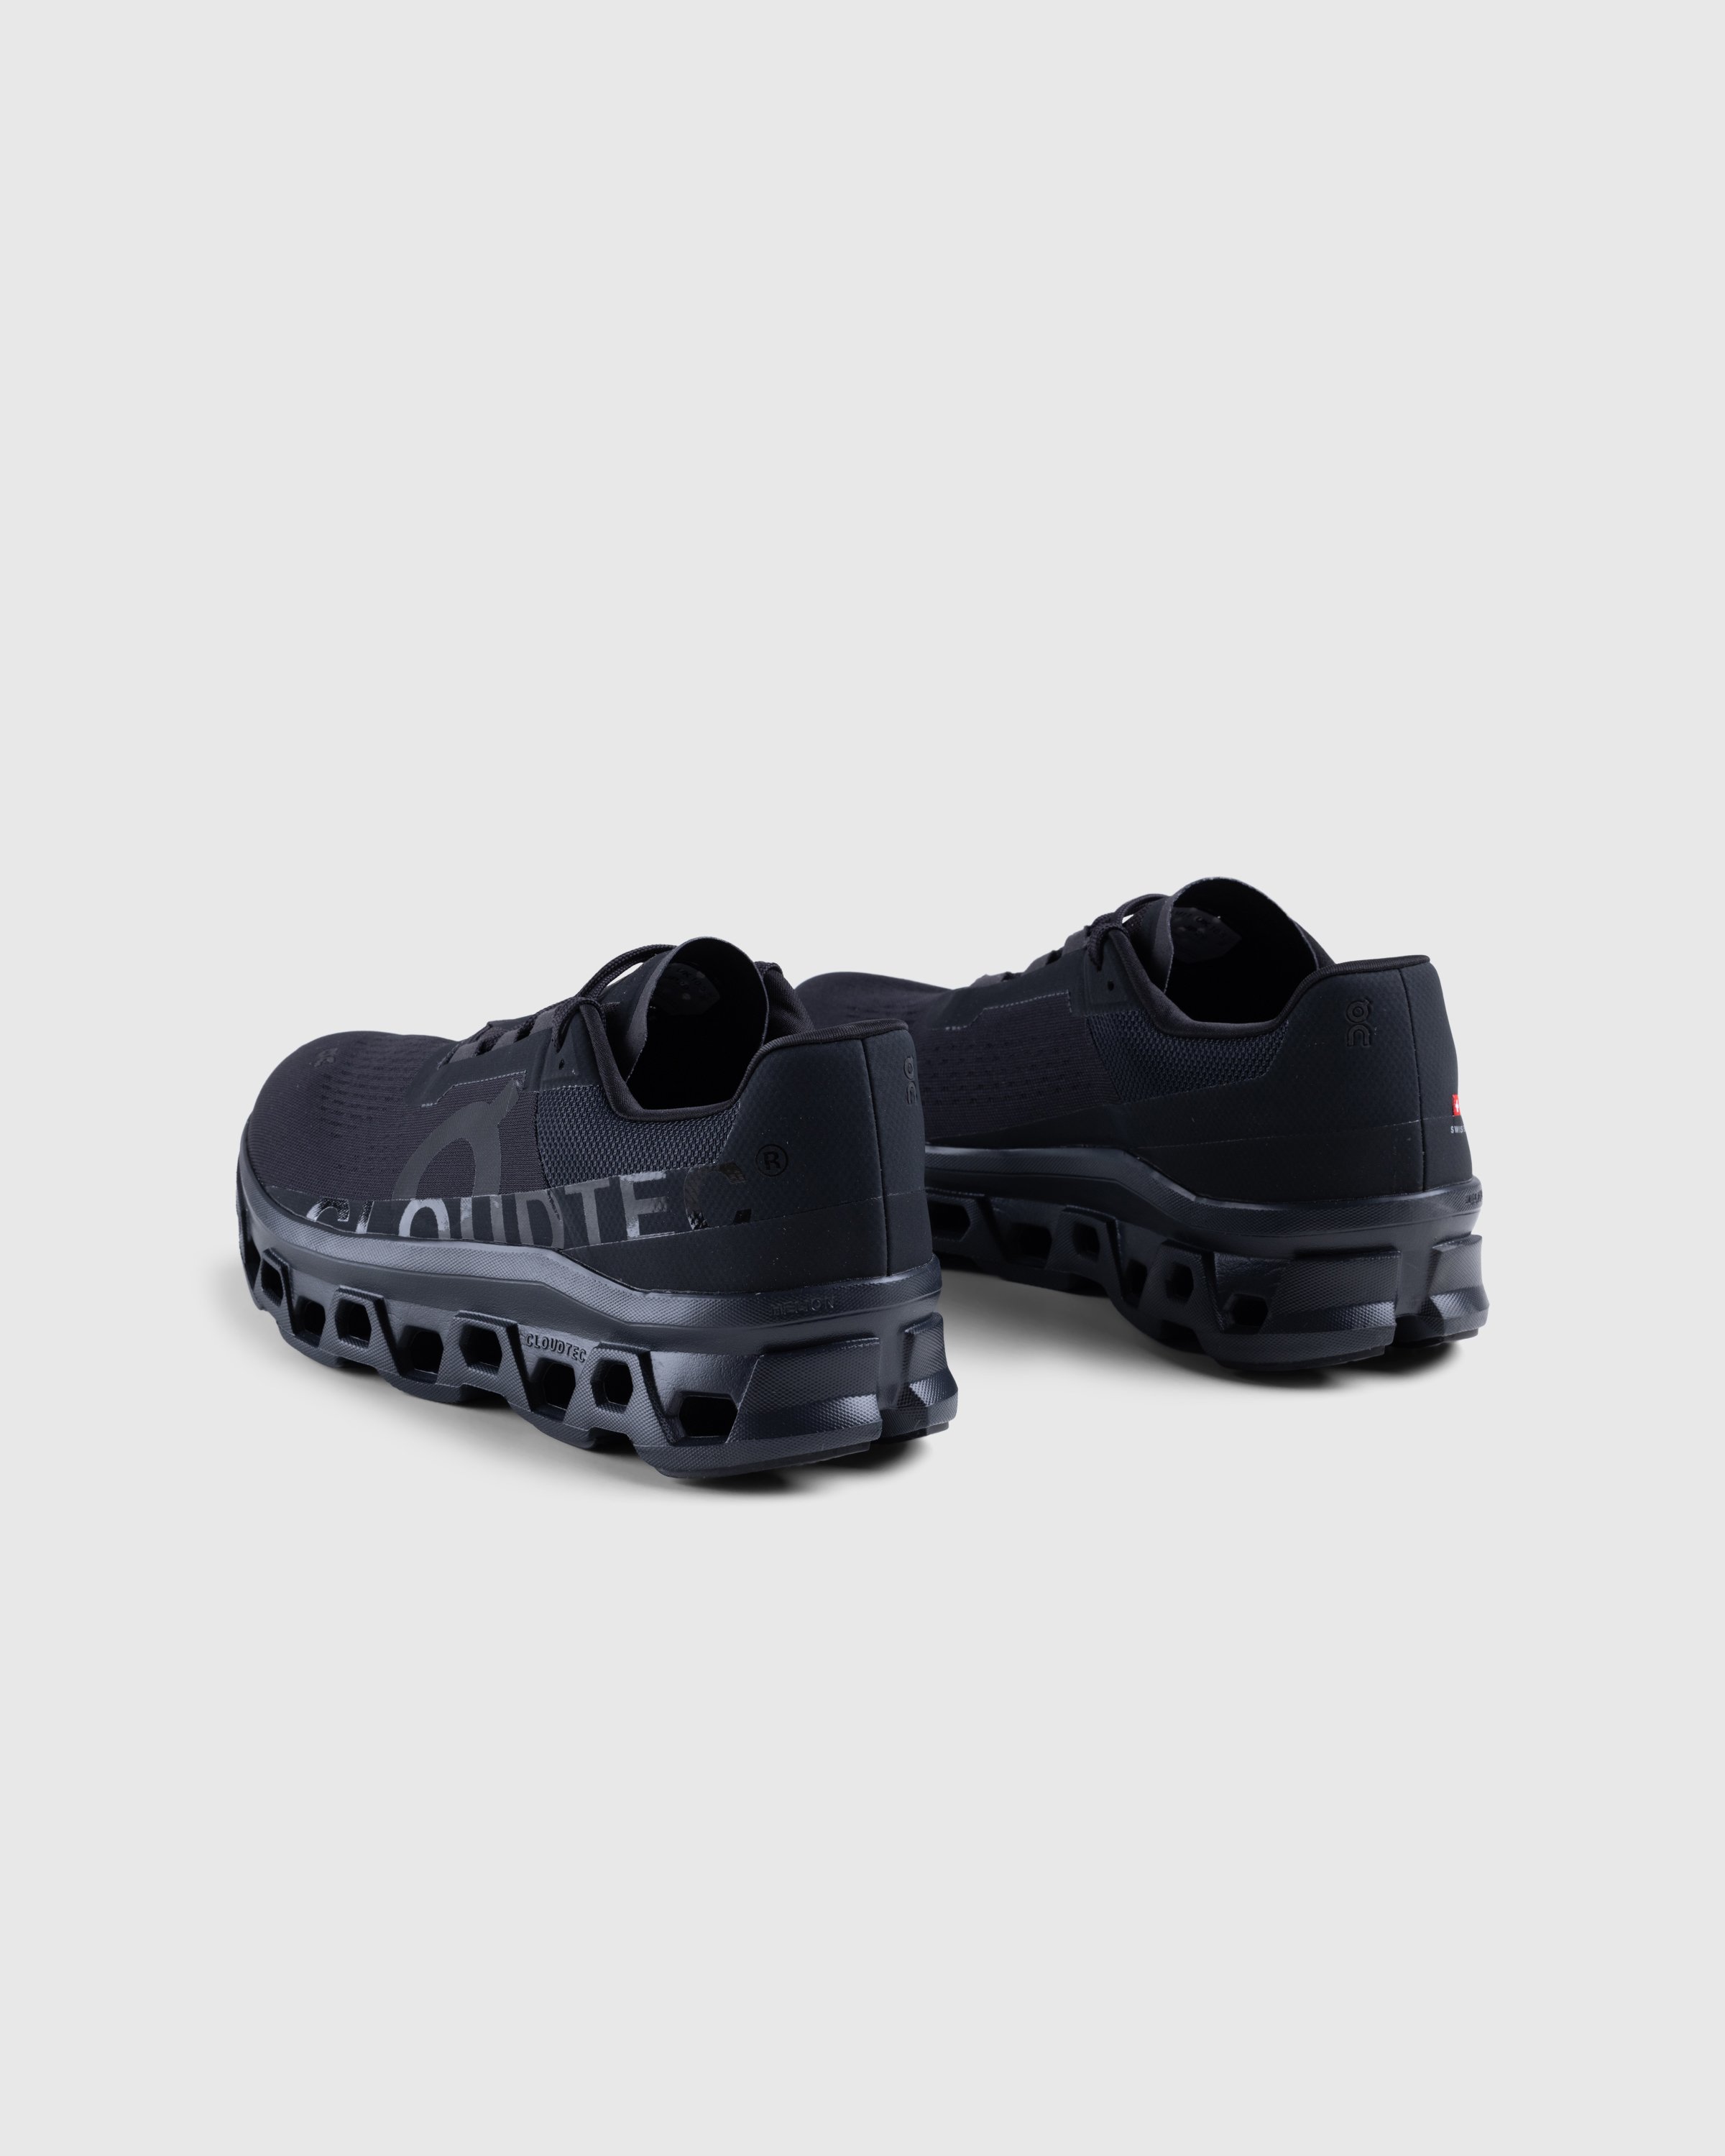 On - PR Cloudmonster 1 M - Footwear - Black - Image 4